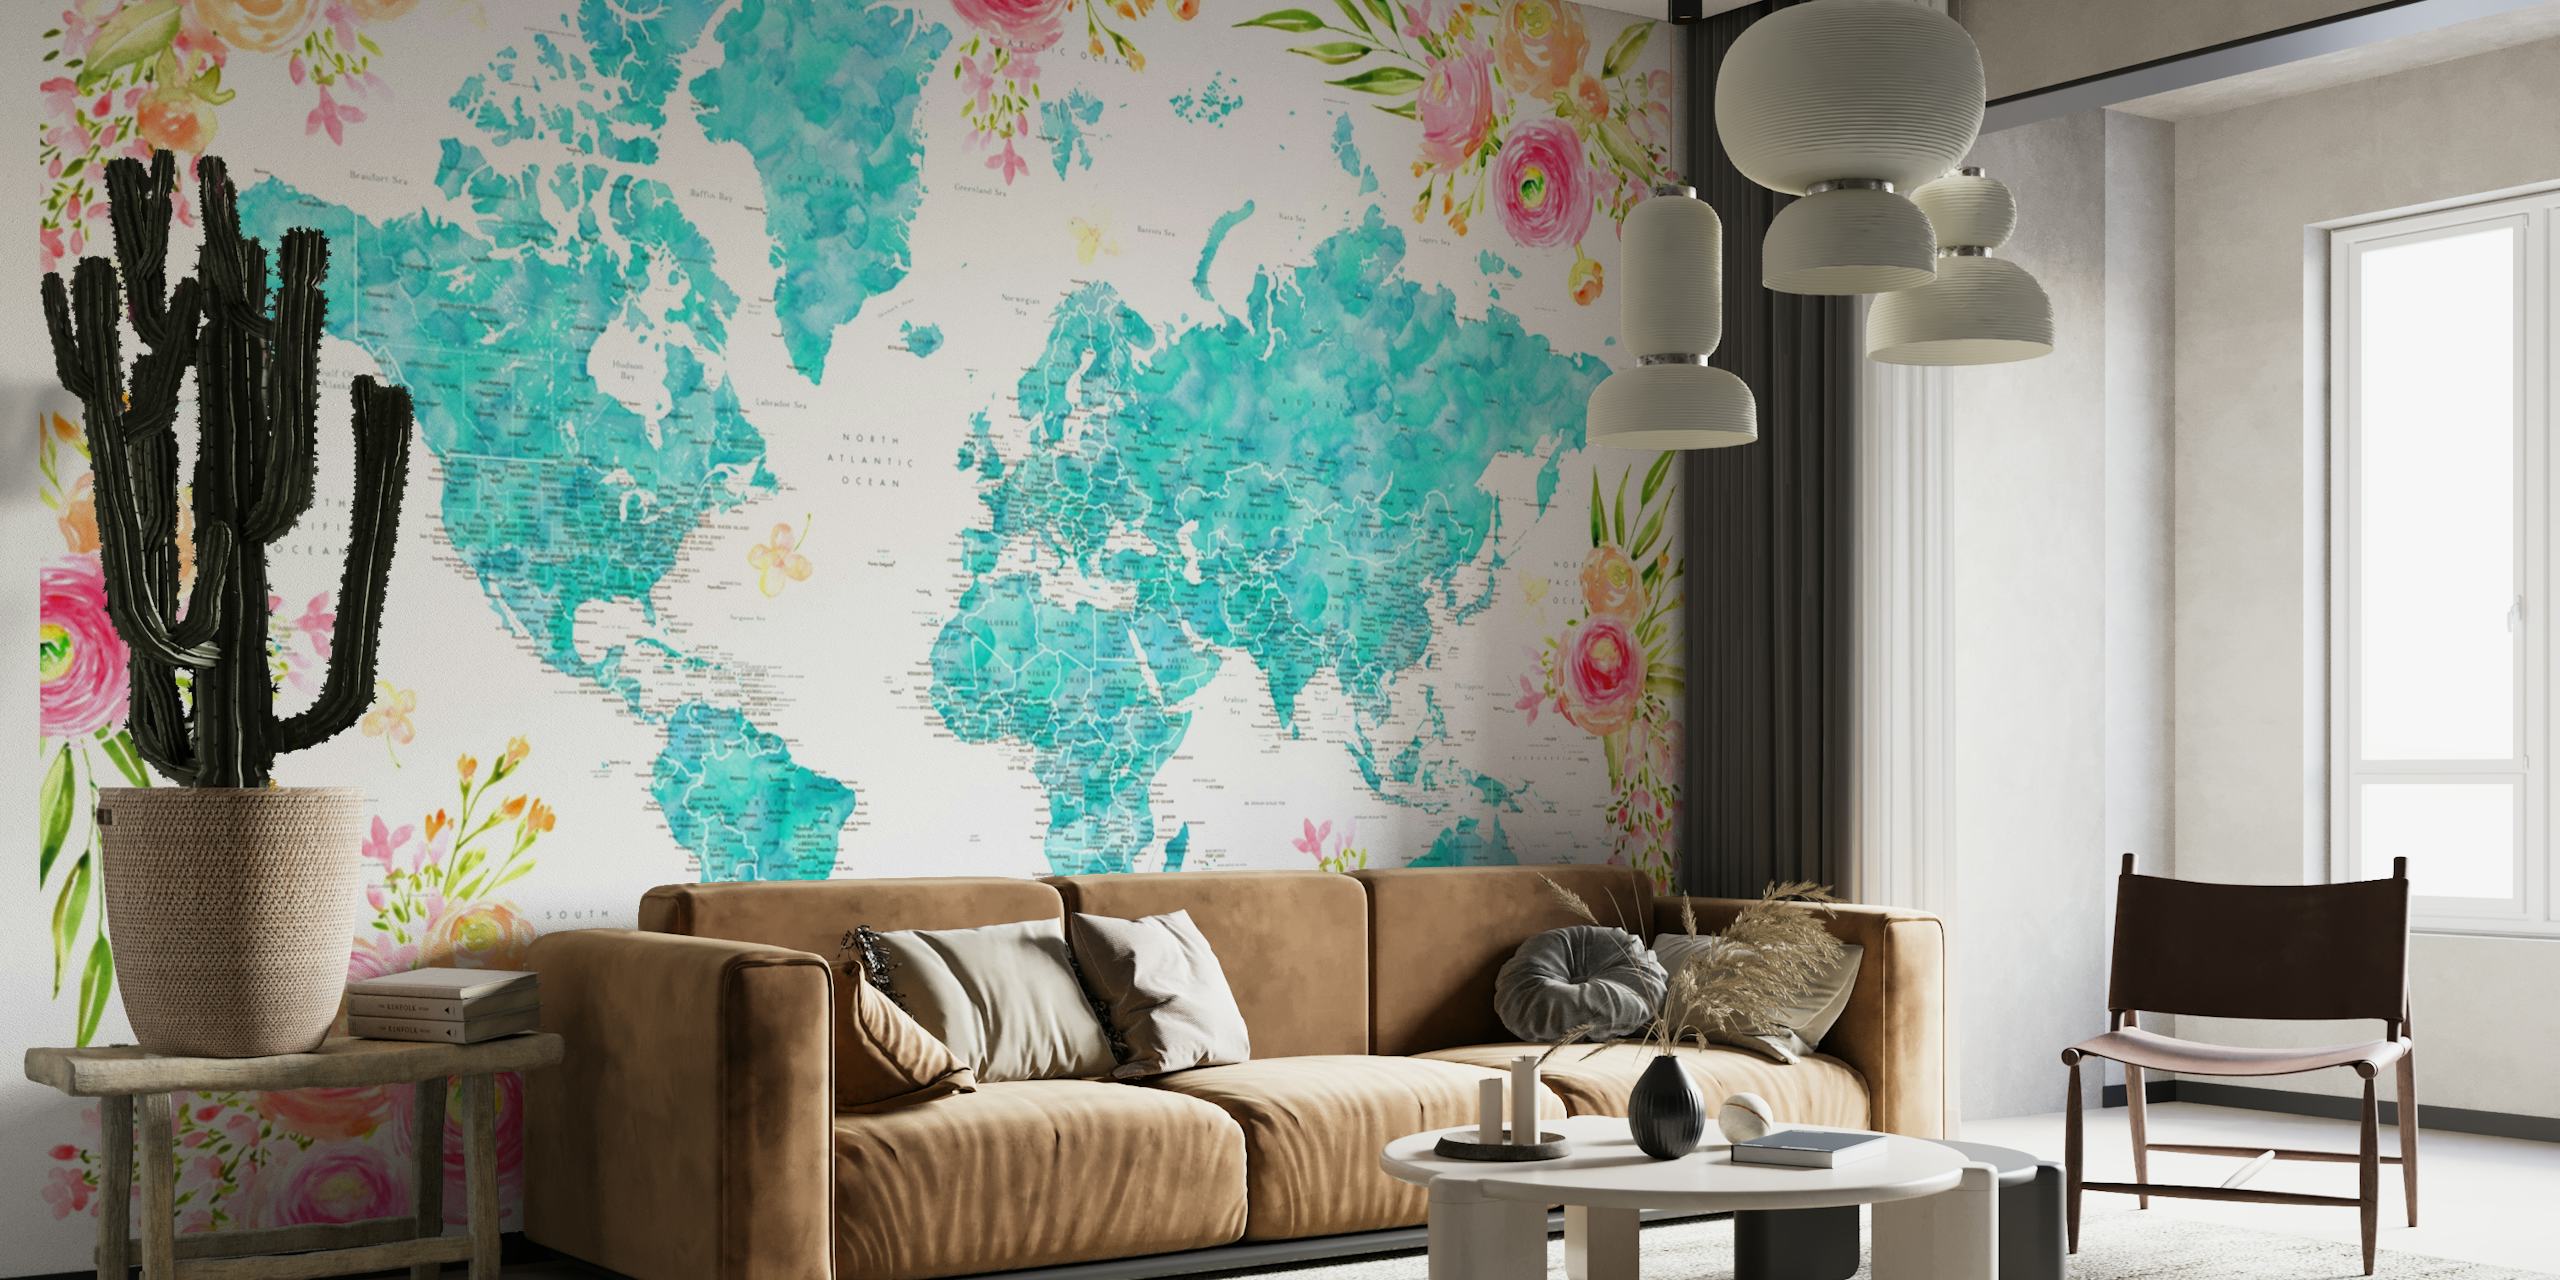 Mapa mundial detalhado com bordas florais em tons turquesa e pastel em um mural de parede.